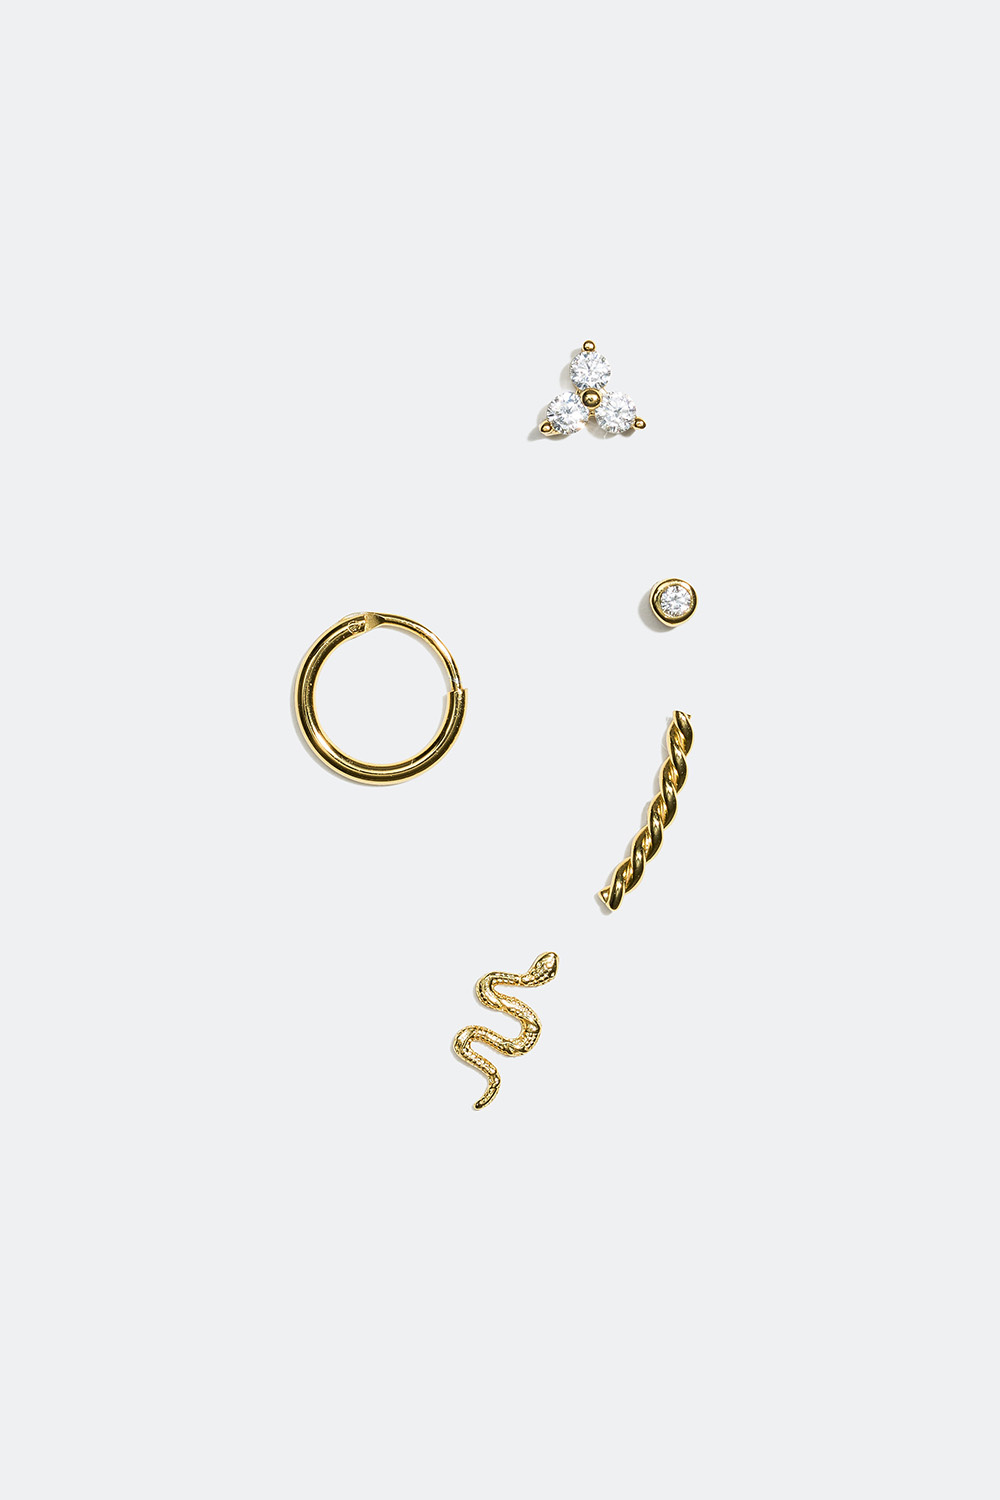 Øreringer og ørestuds med slange, forgylt med 18K gull, 5-pakning